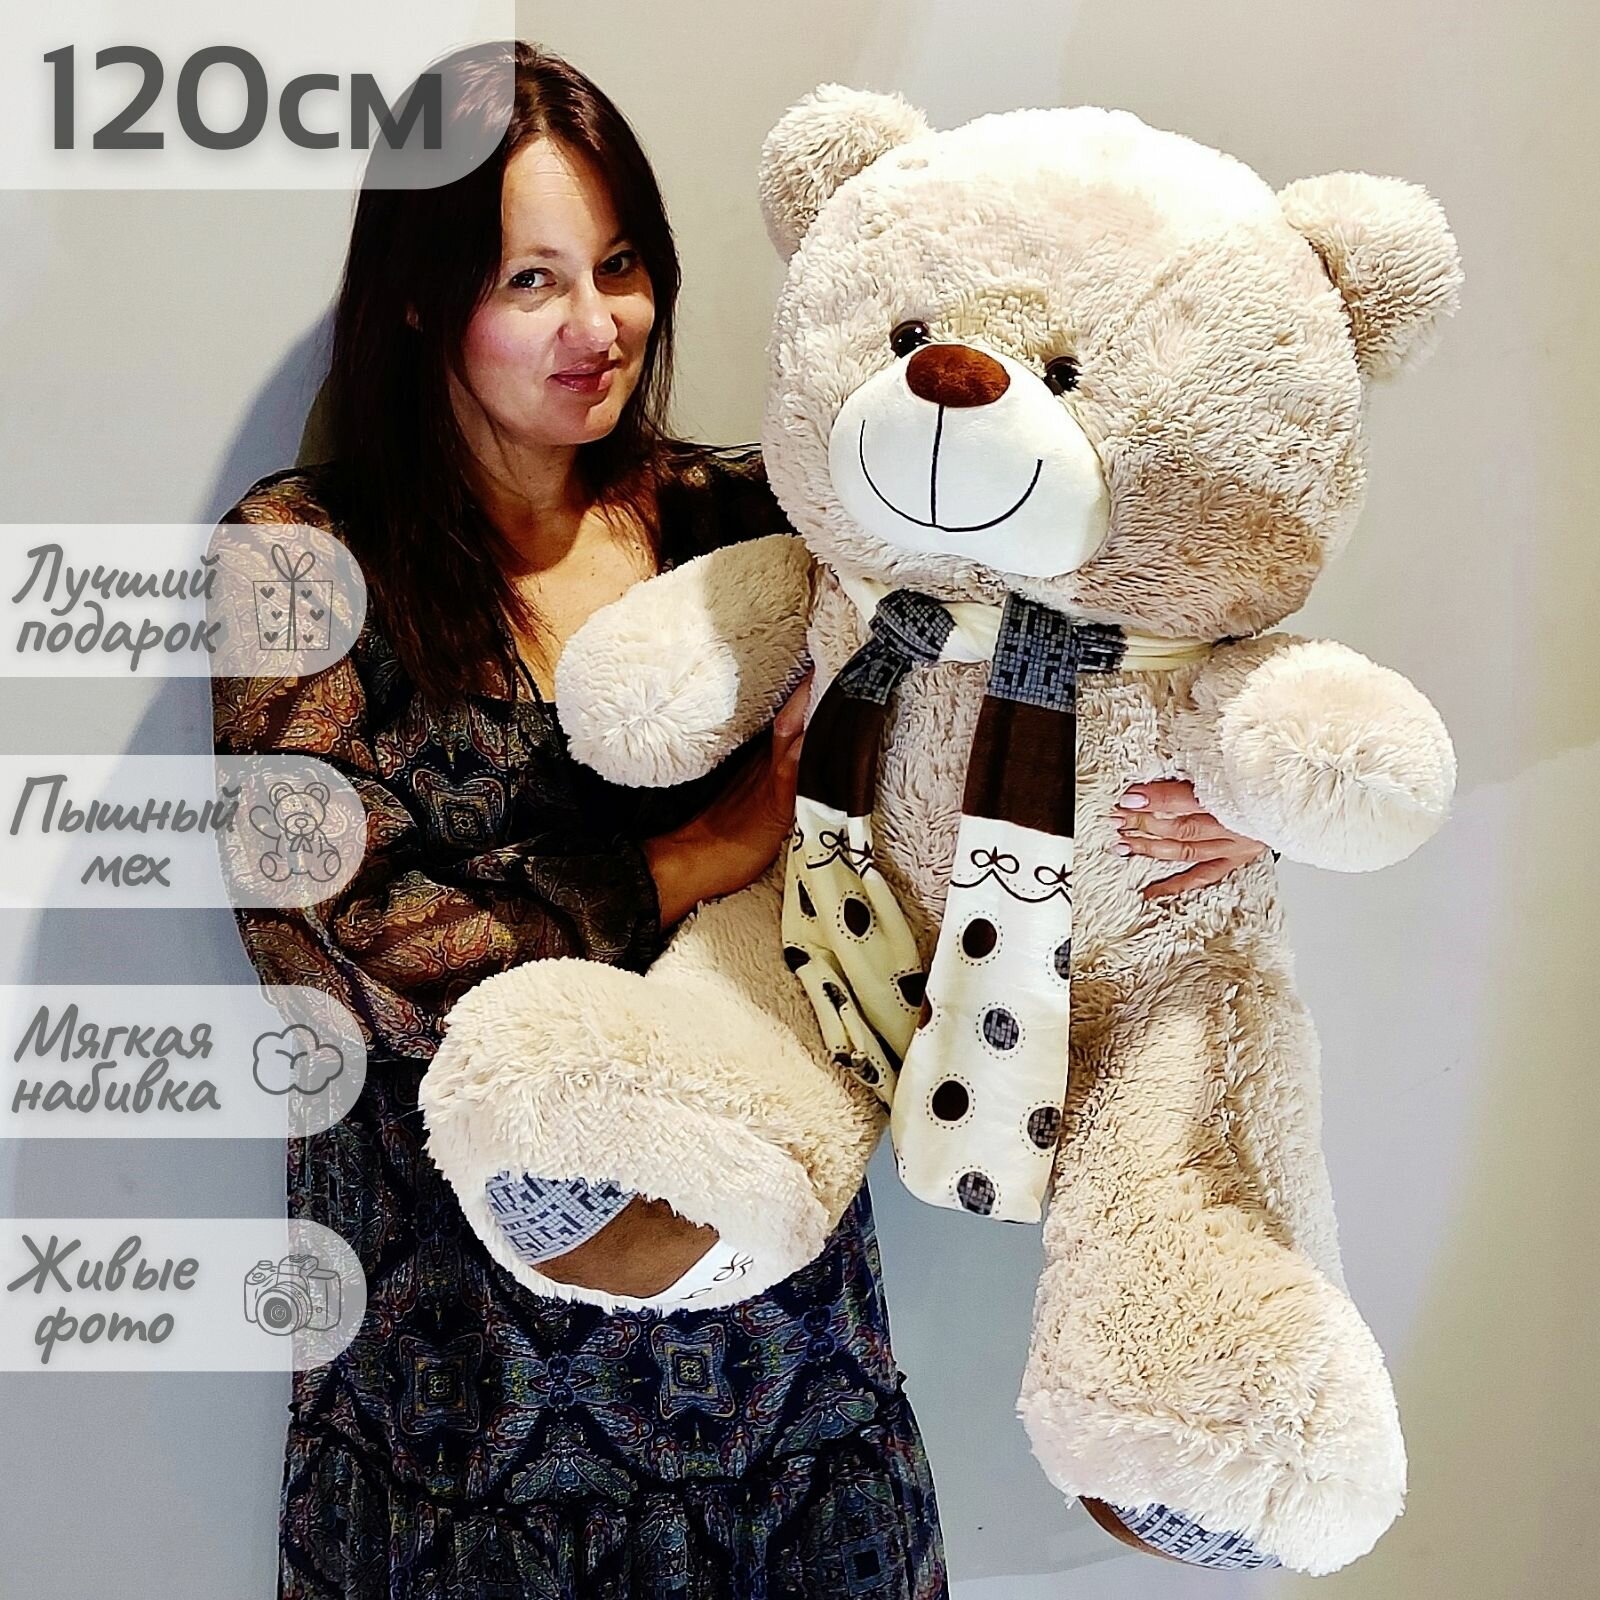 Большой плюшевый медведь, мягкая игрушка мишка Мартин 120 см полосатый шарф, серо-кремовый